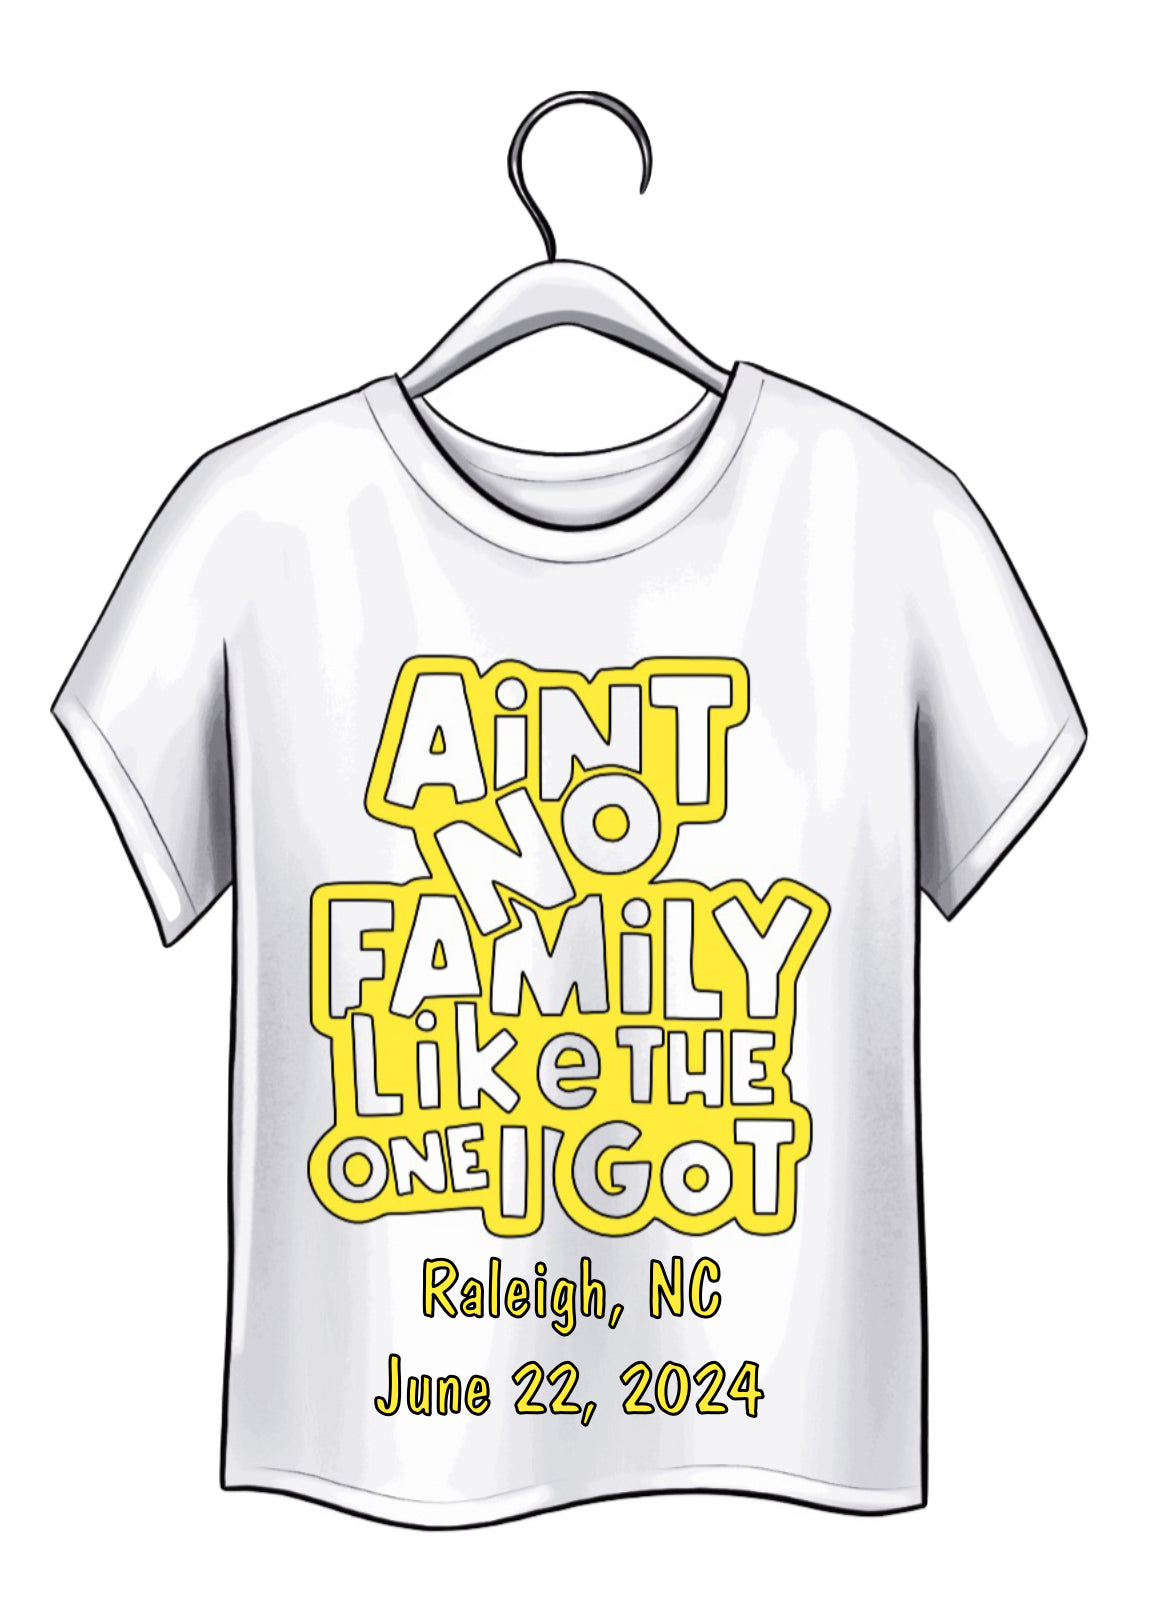 White Family Reunion shirts